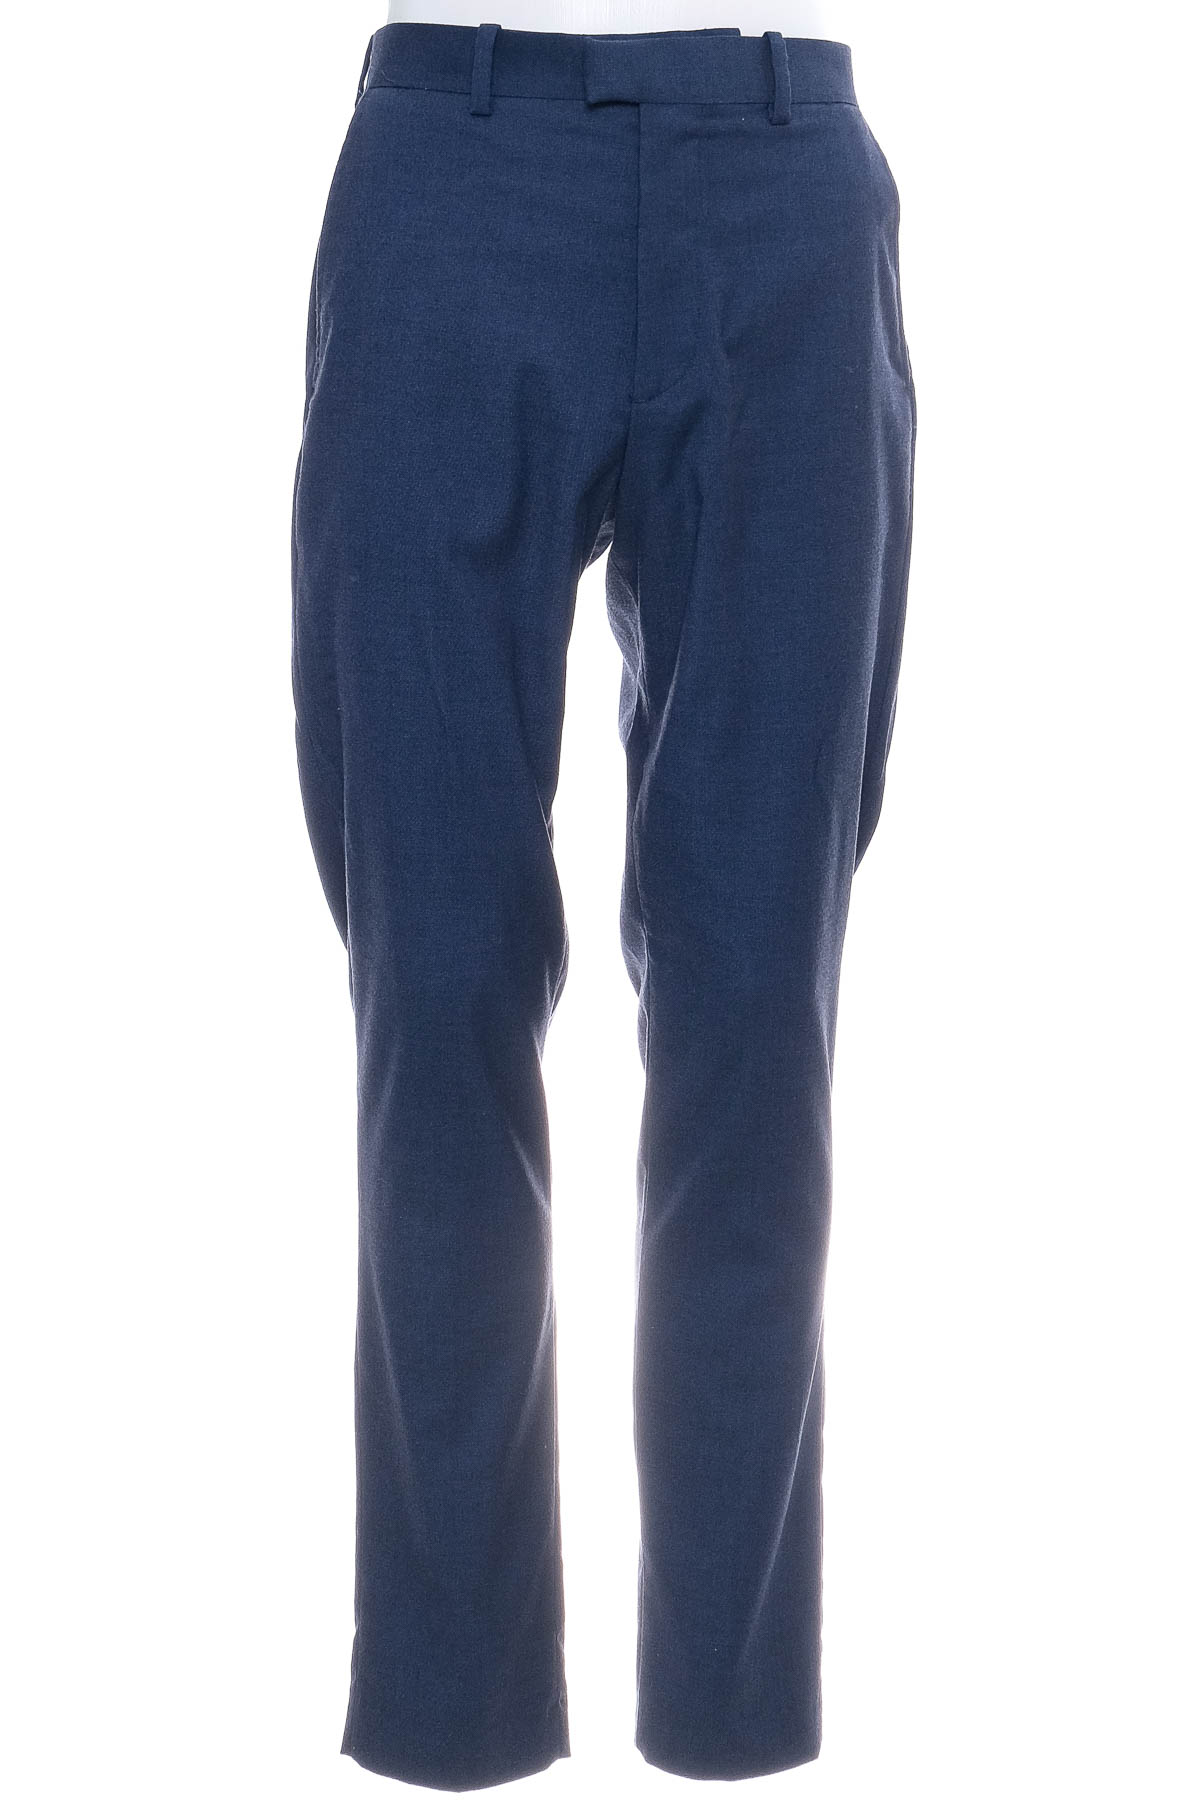 Pantalon pentru bărbați - H&M - 0